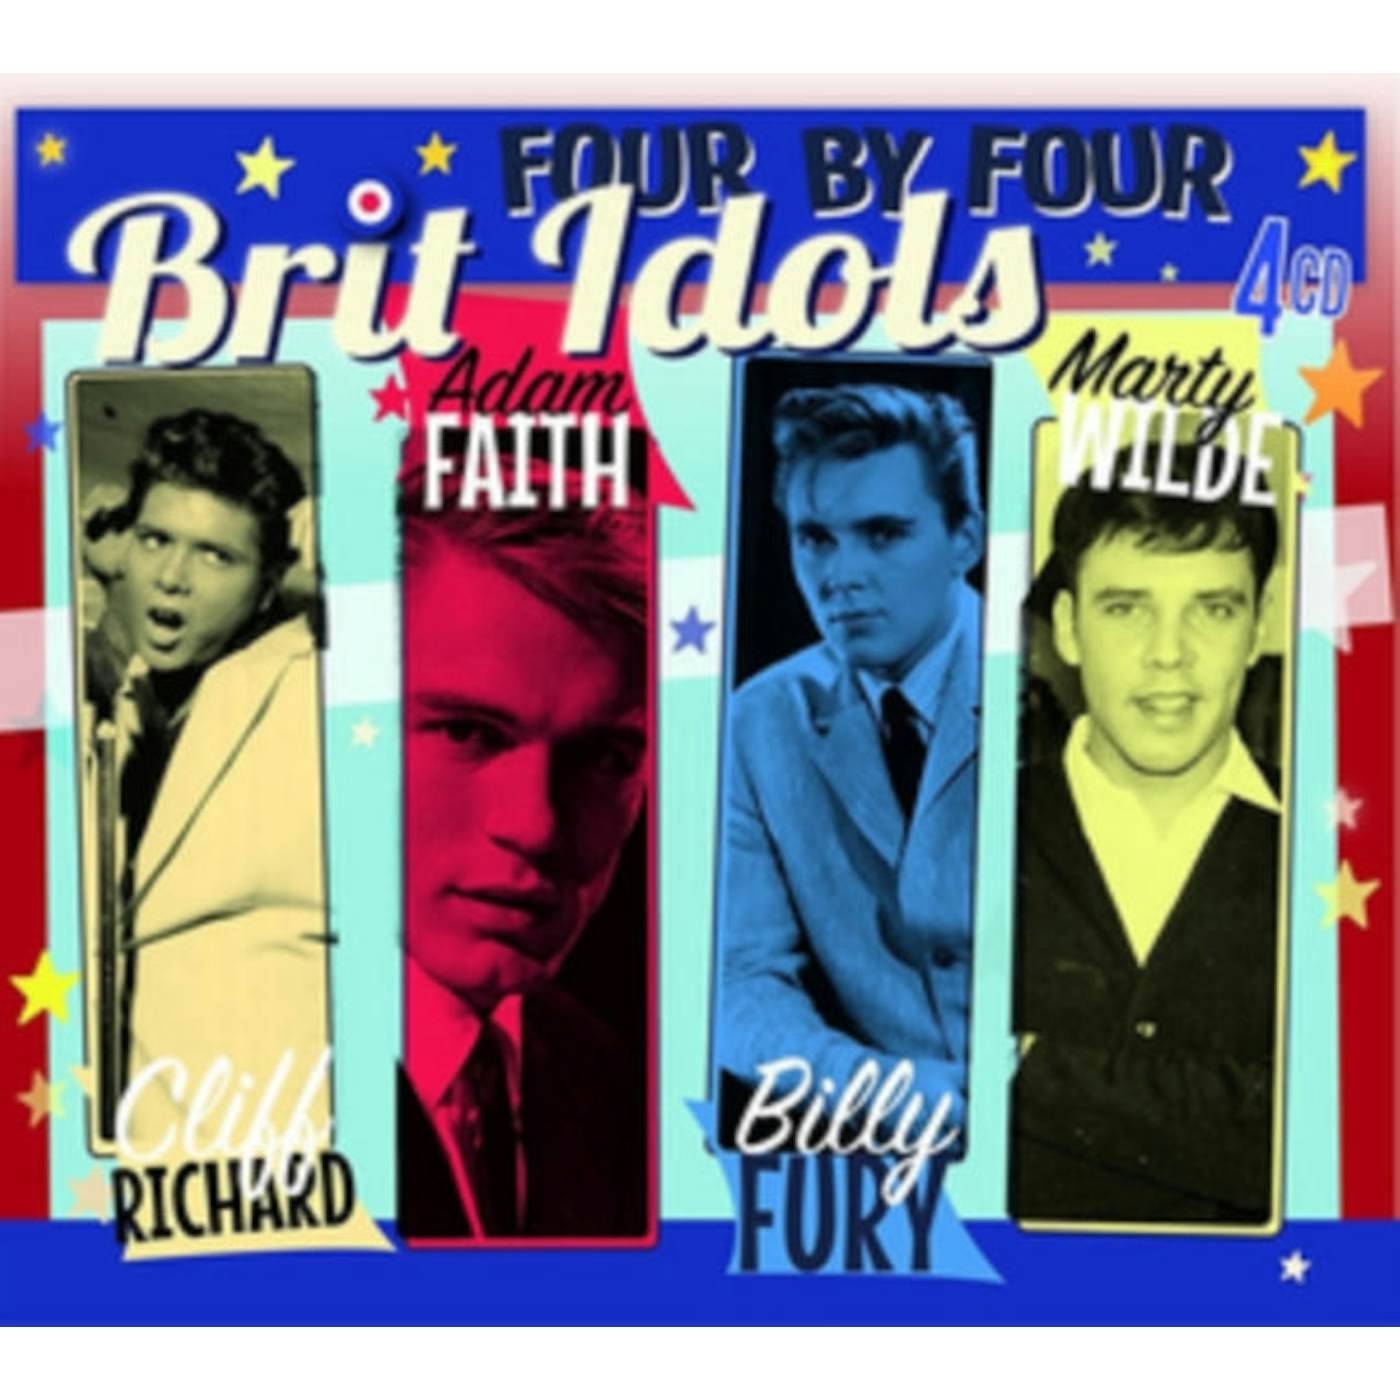 Cliff Richard, Adam Faith, Bill Fury, Marty Wilde CD - Brit Idols